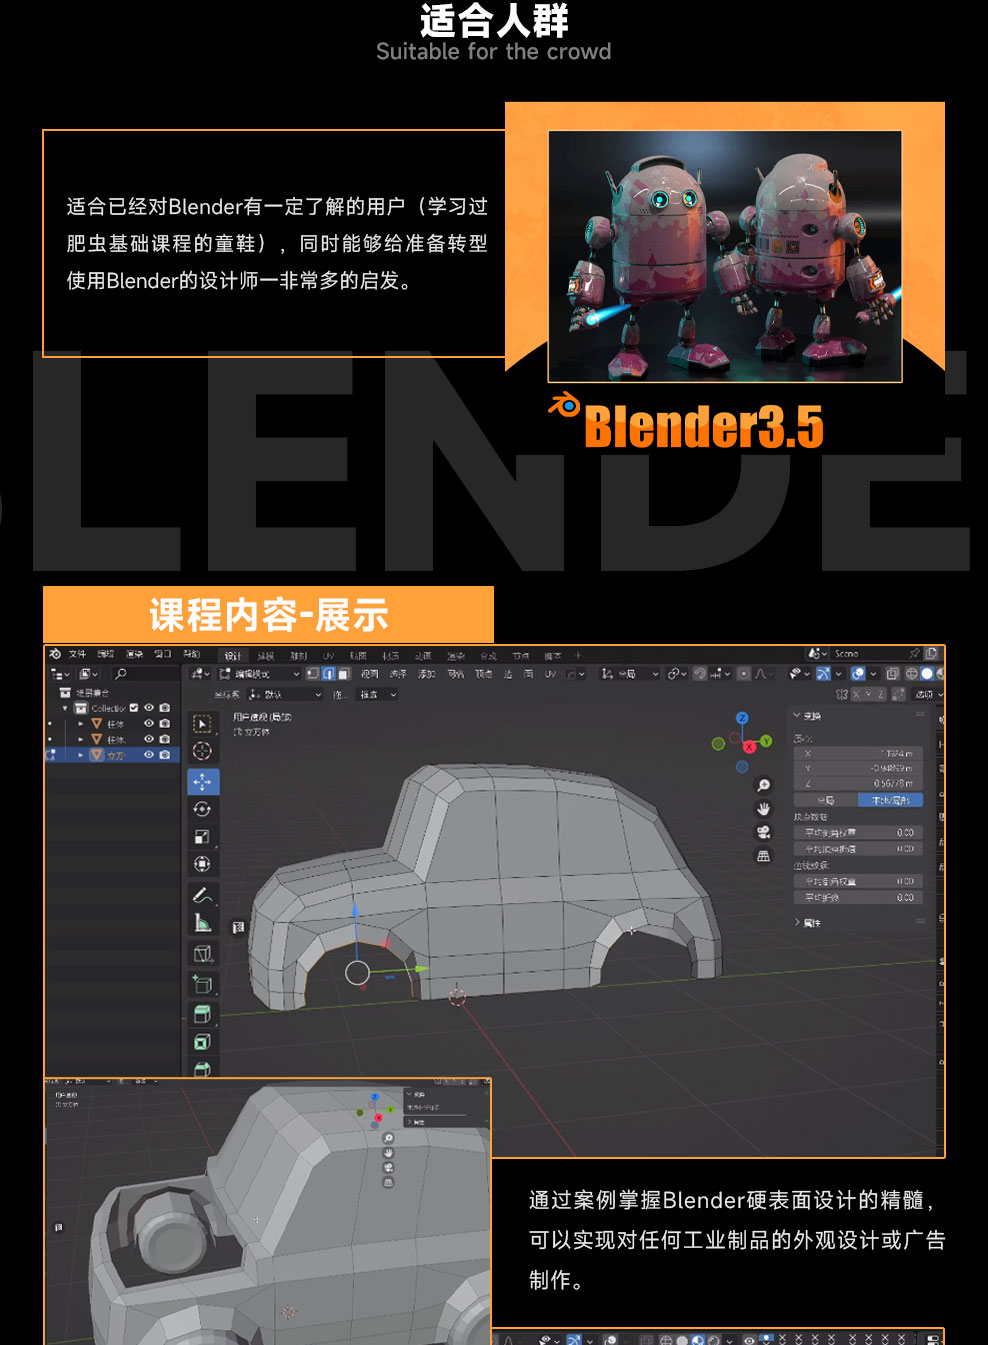 Blender3.5汽车建模-菲亚特500实战案例